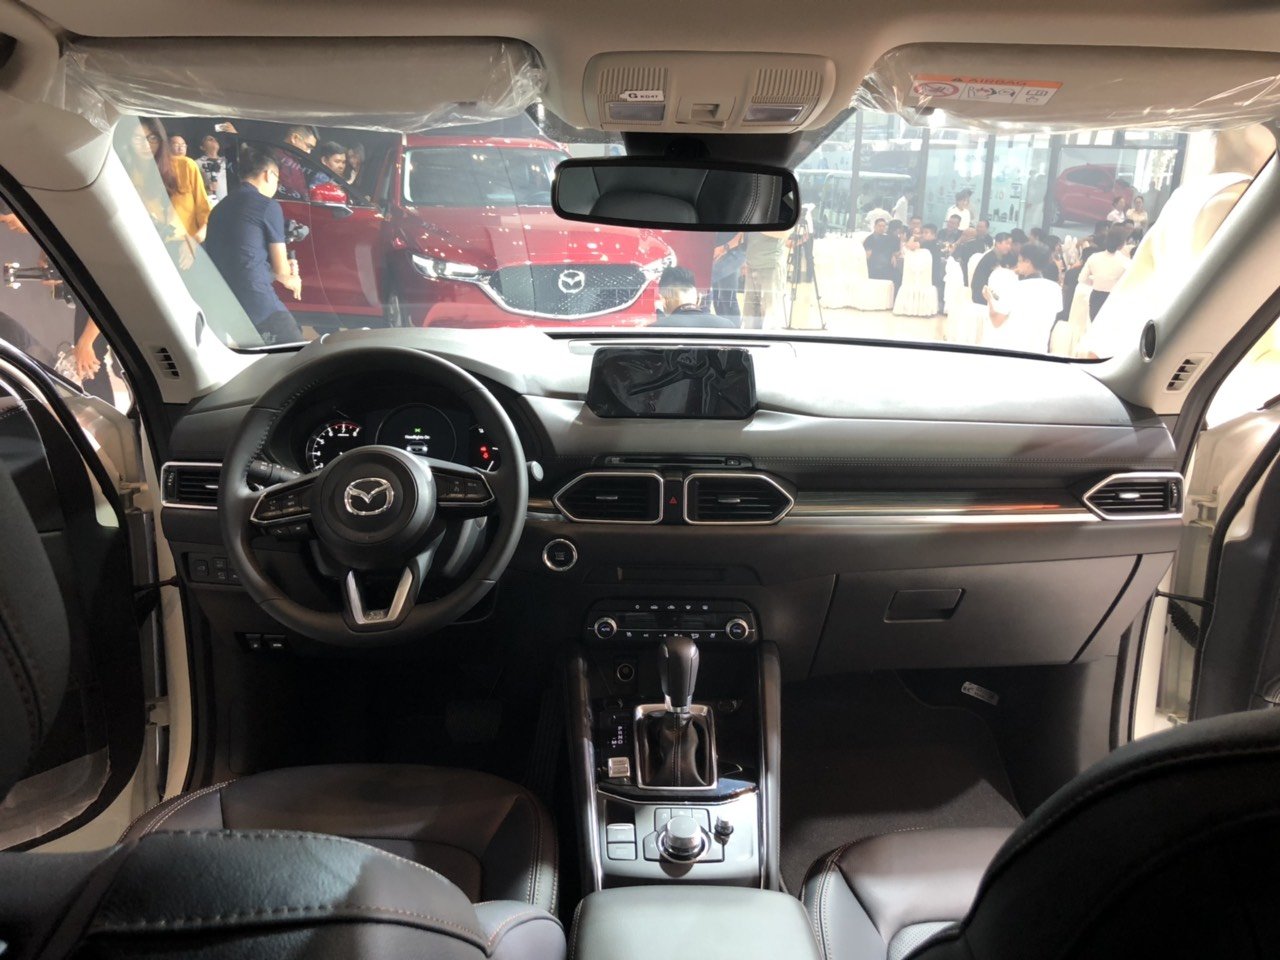 Giá lăn bánh Mazda CX-5 cực rẻ nhờ hưởng ưu đãi kép, nuốt chửng Honda CR-V và Hyundai Tucson ảnh 3